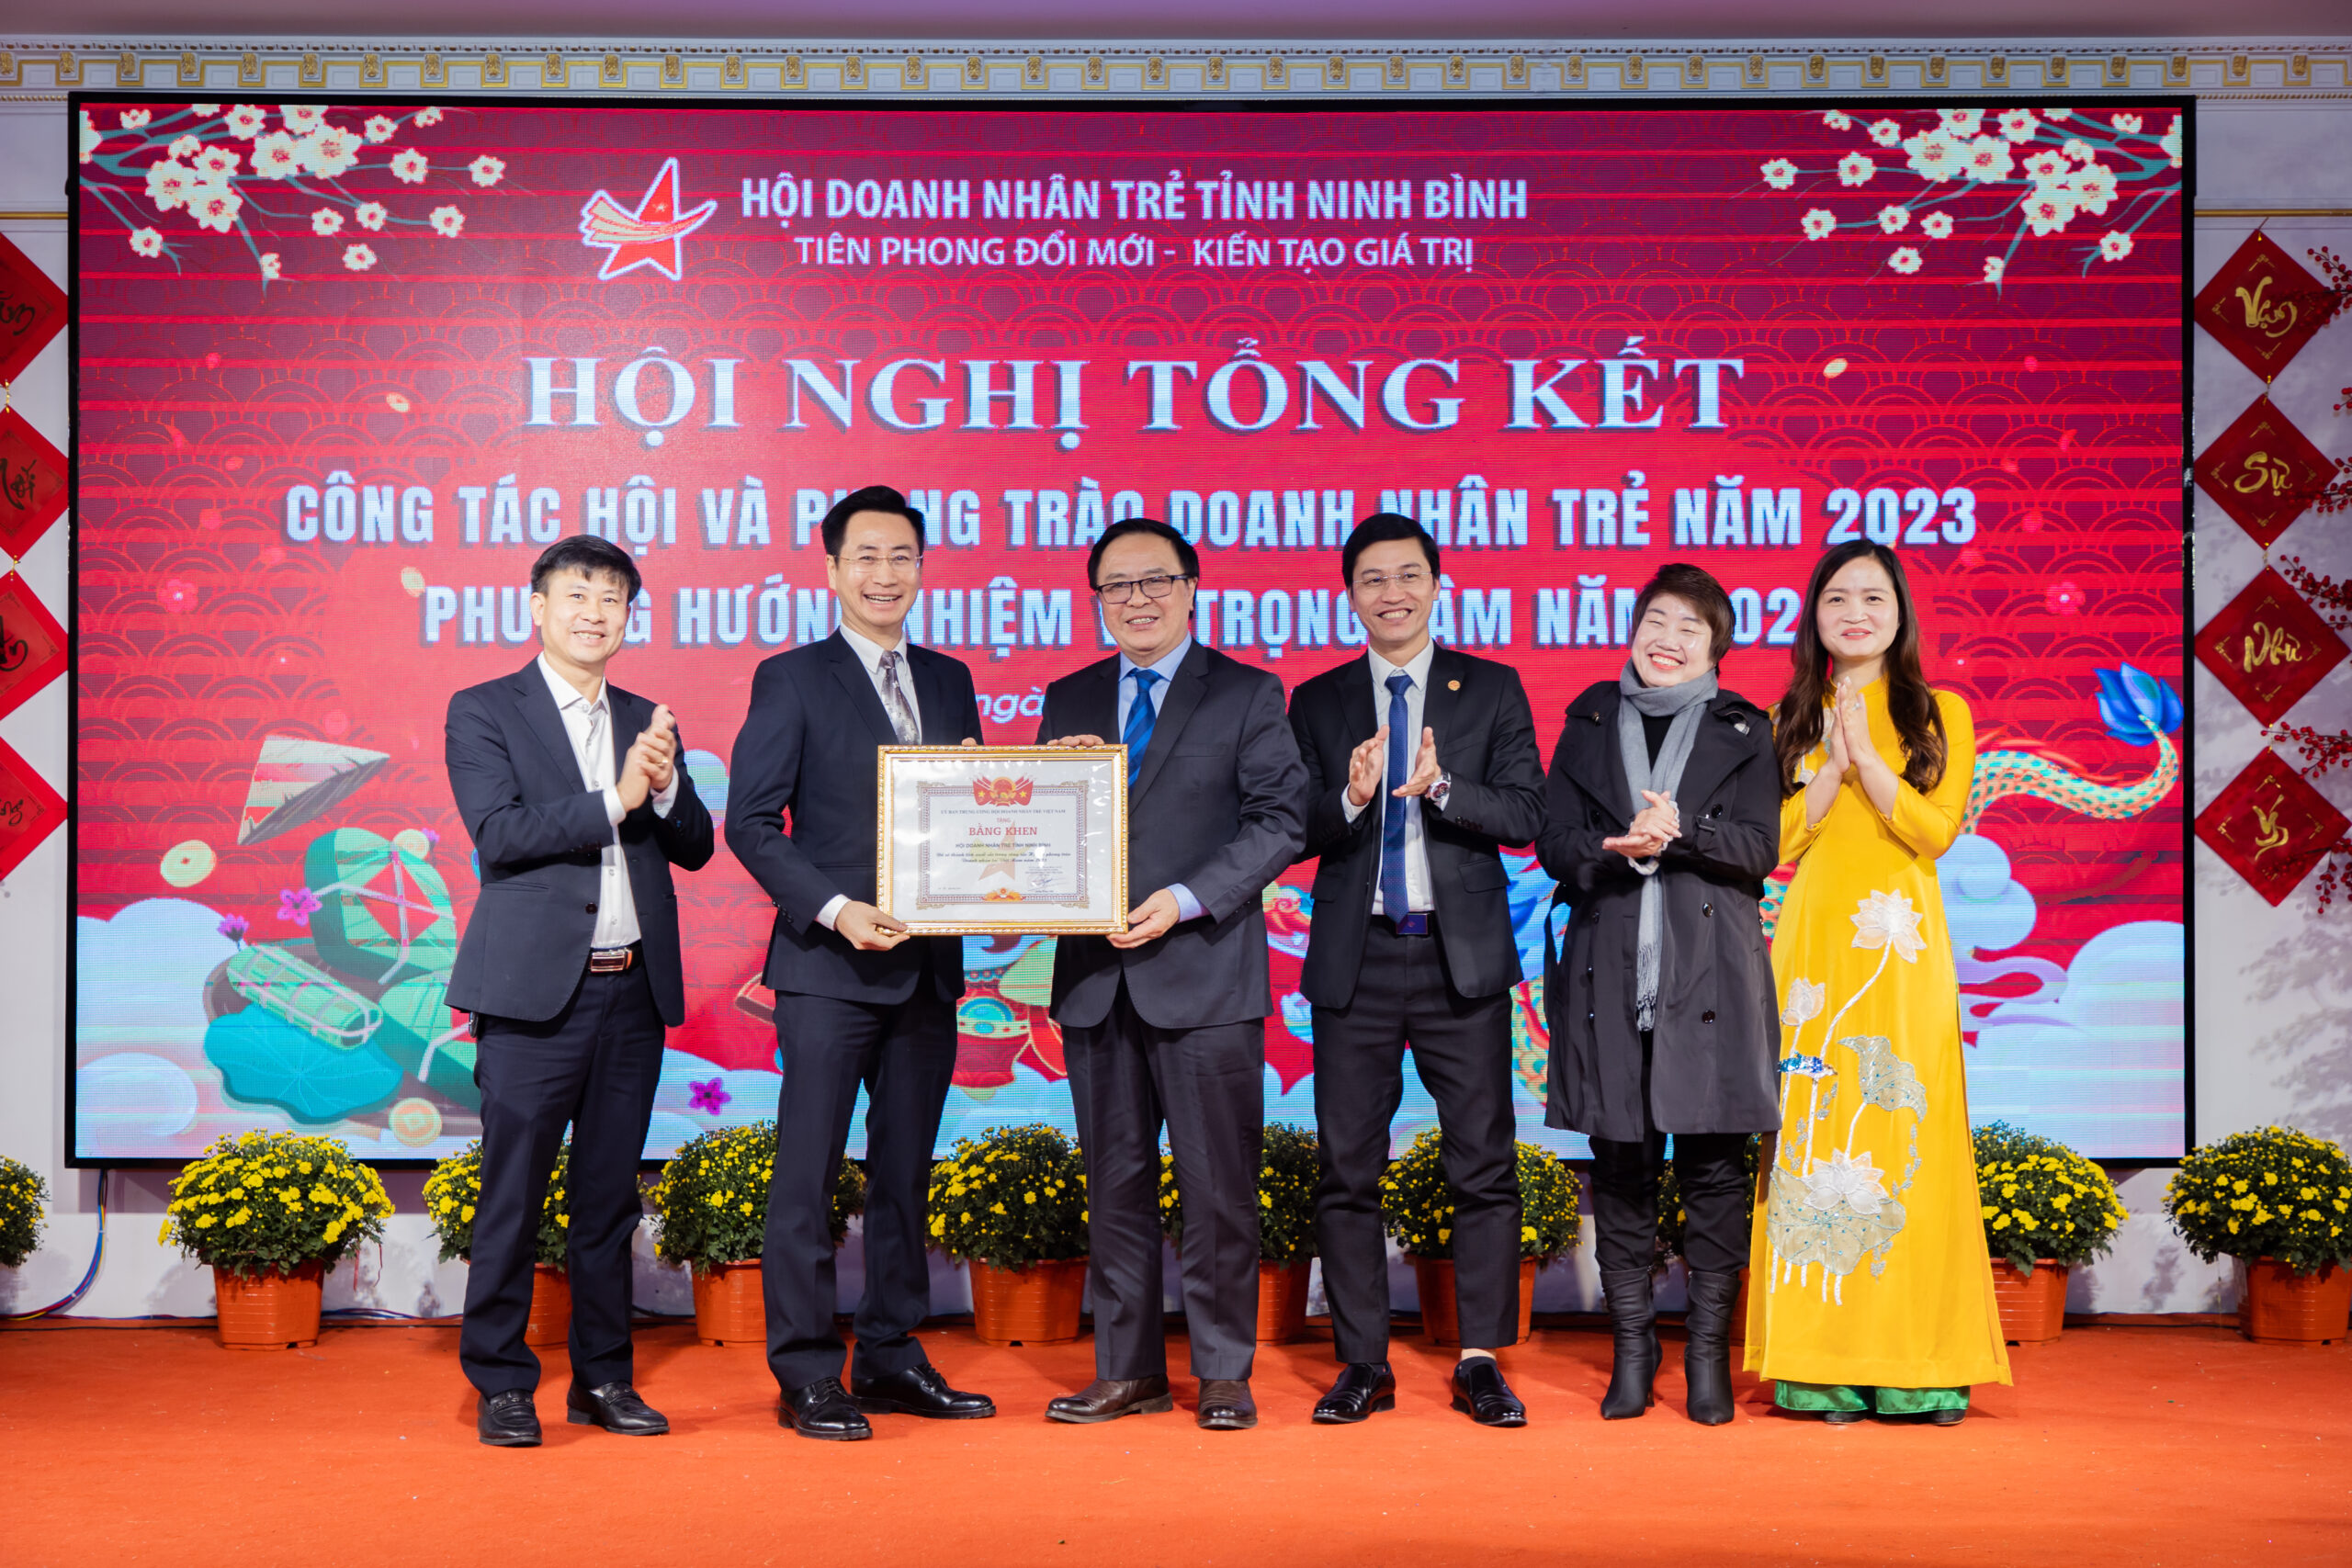 Ông Hoàng Bình Quân, Chủ tịch danh dự Hội Doanh nhân trẻ Việt Nam trao Bằng khen của T.Ư Hội cho Hội Doanh nhân trẻ Ninh Bình.